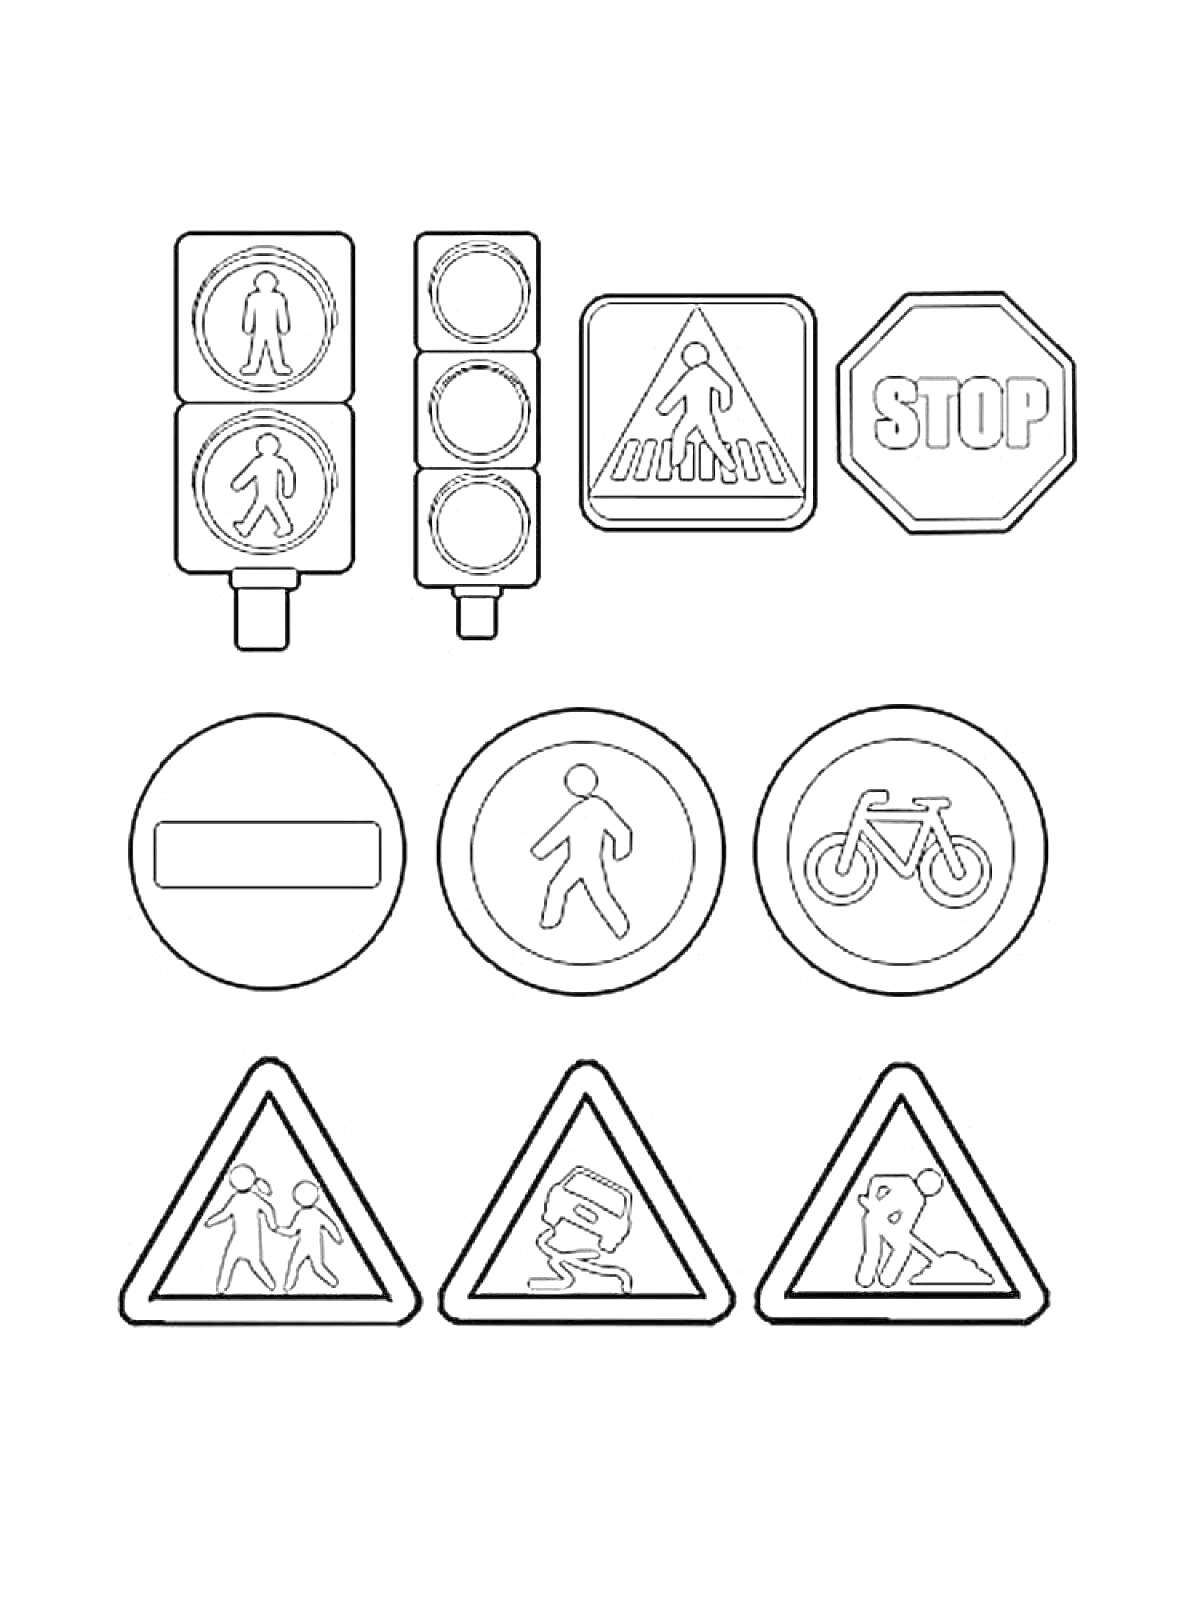 Раскраска Дорожные знаки: светофор, пешеходный переход, стоп, кирпич, пешеходная зона, велопешеходная зона, дети, ремонтные работы